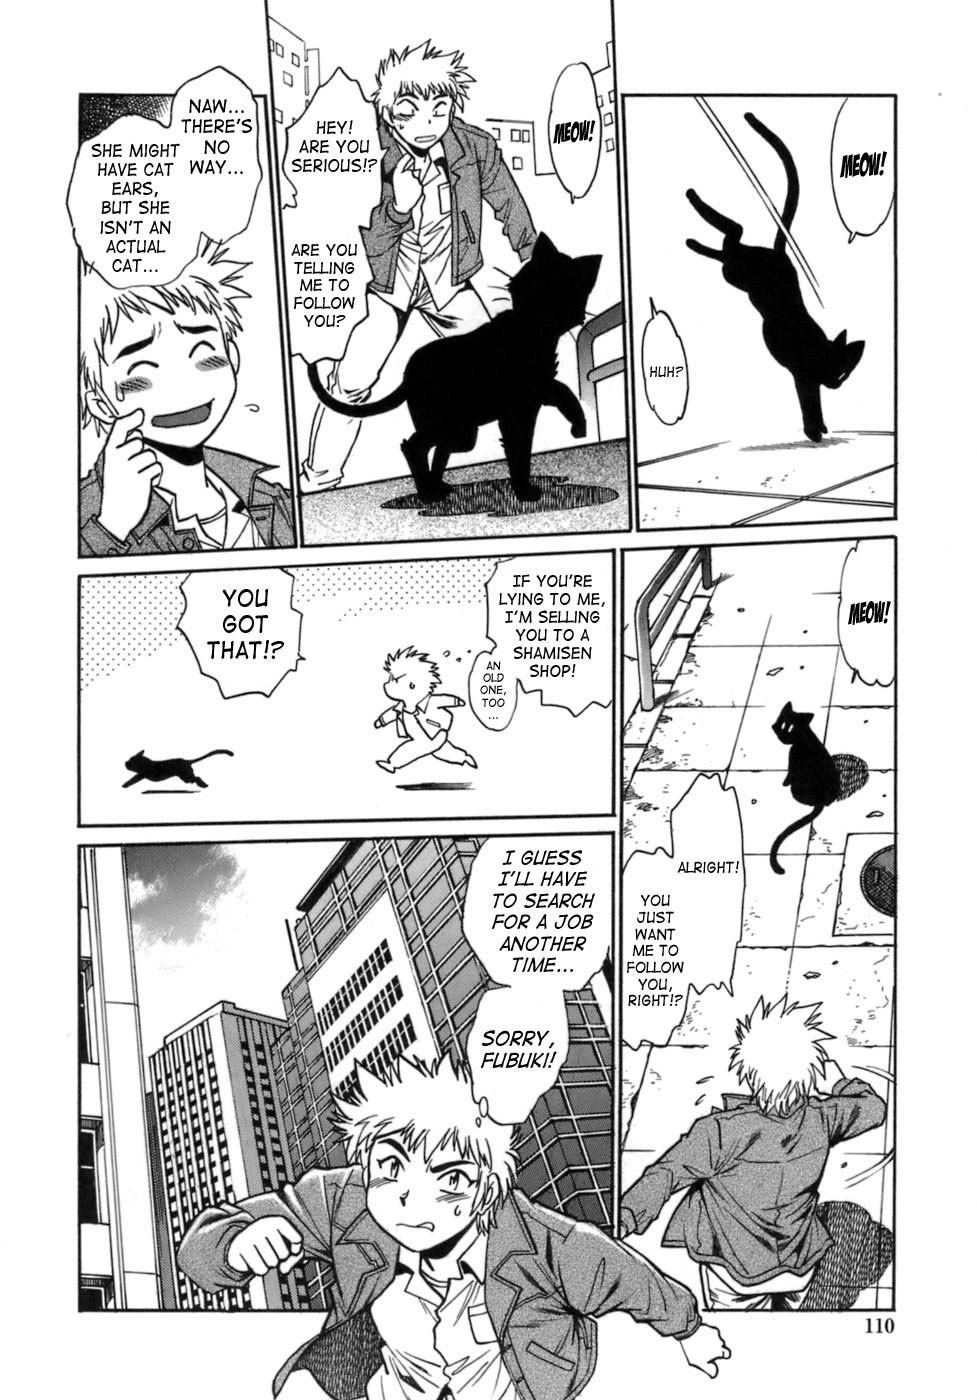 Tail Chaser Vol.1 107 hentai manga